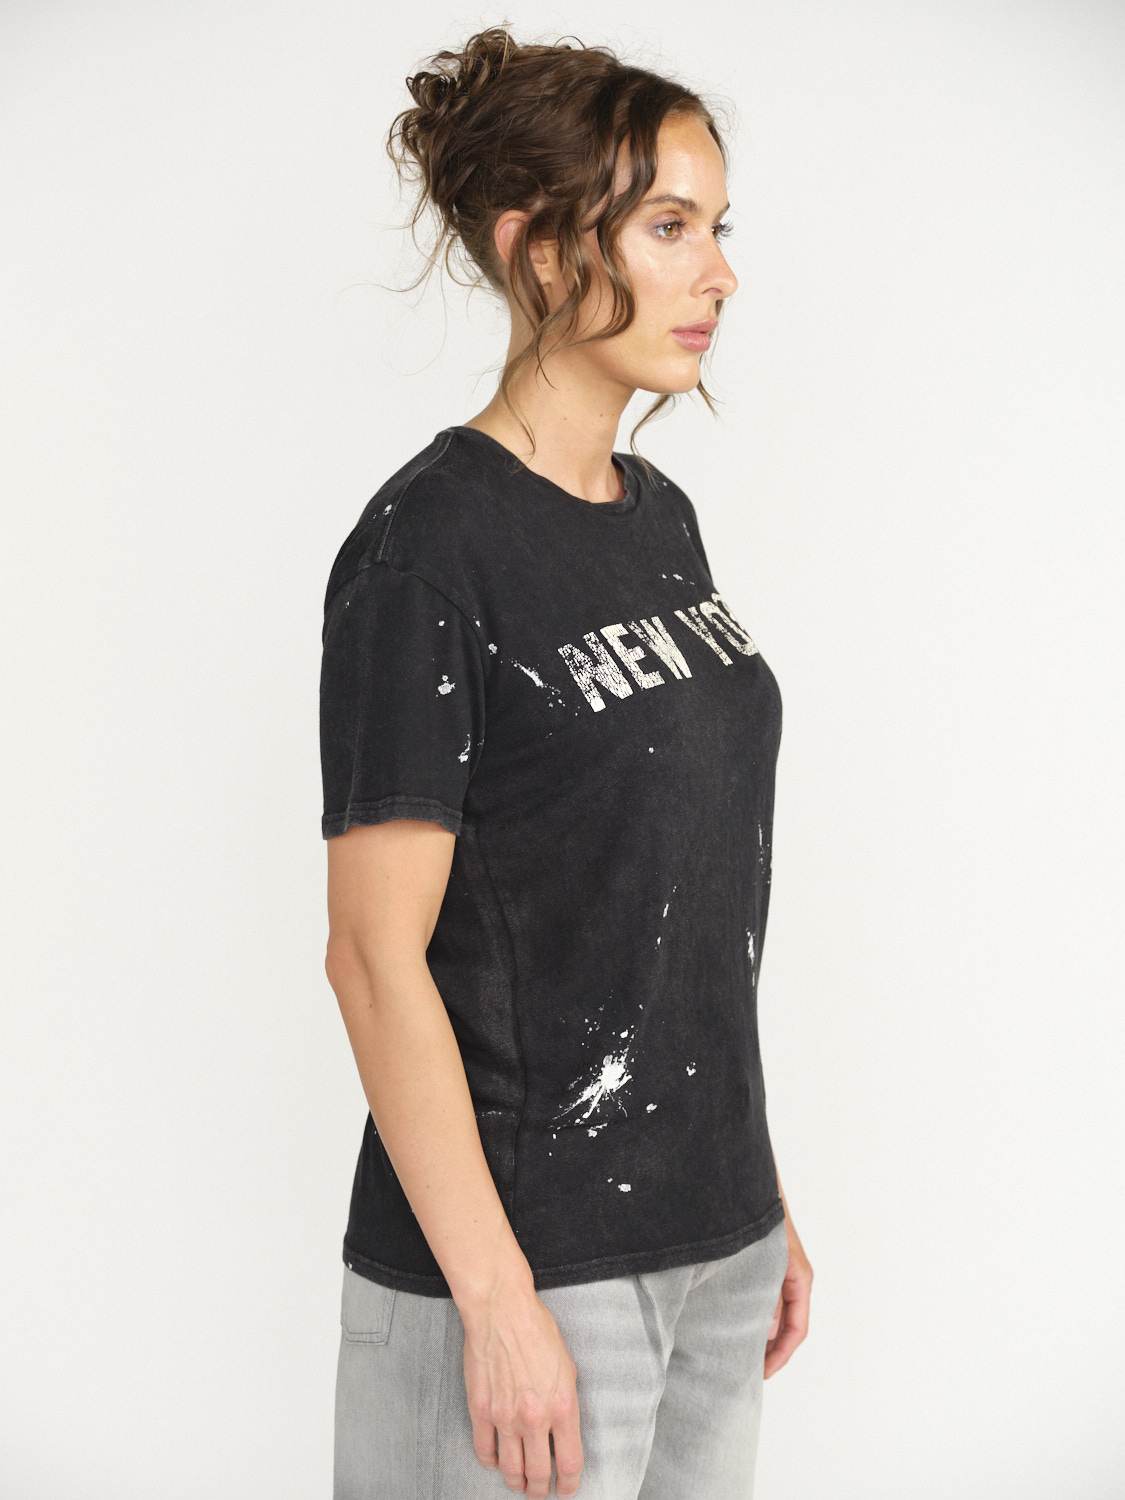 R13 New York Boy T-Shirt  - Splatter Shirt aus Baumwolle  schwarz M